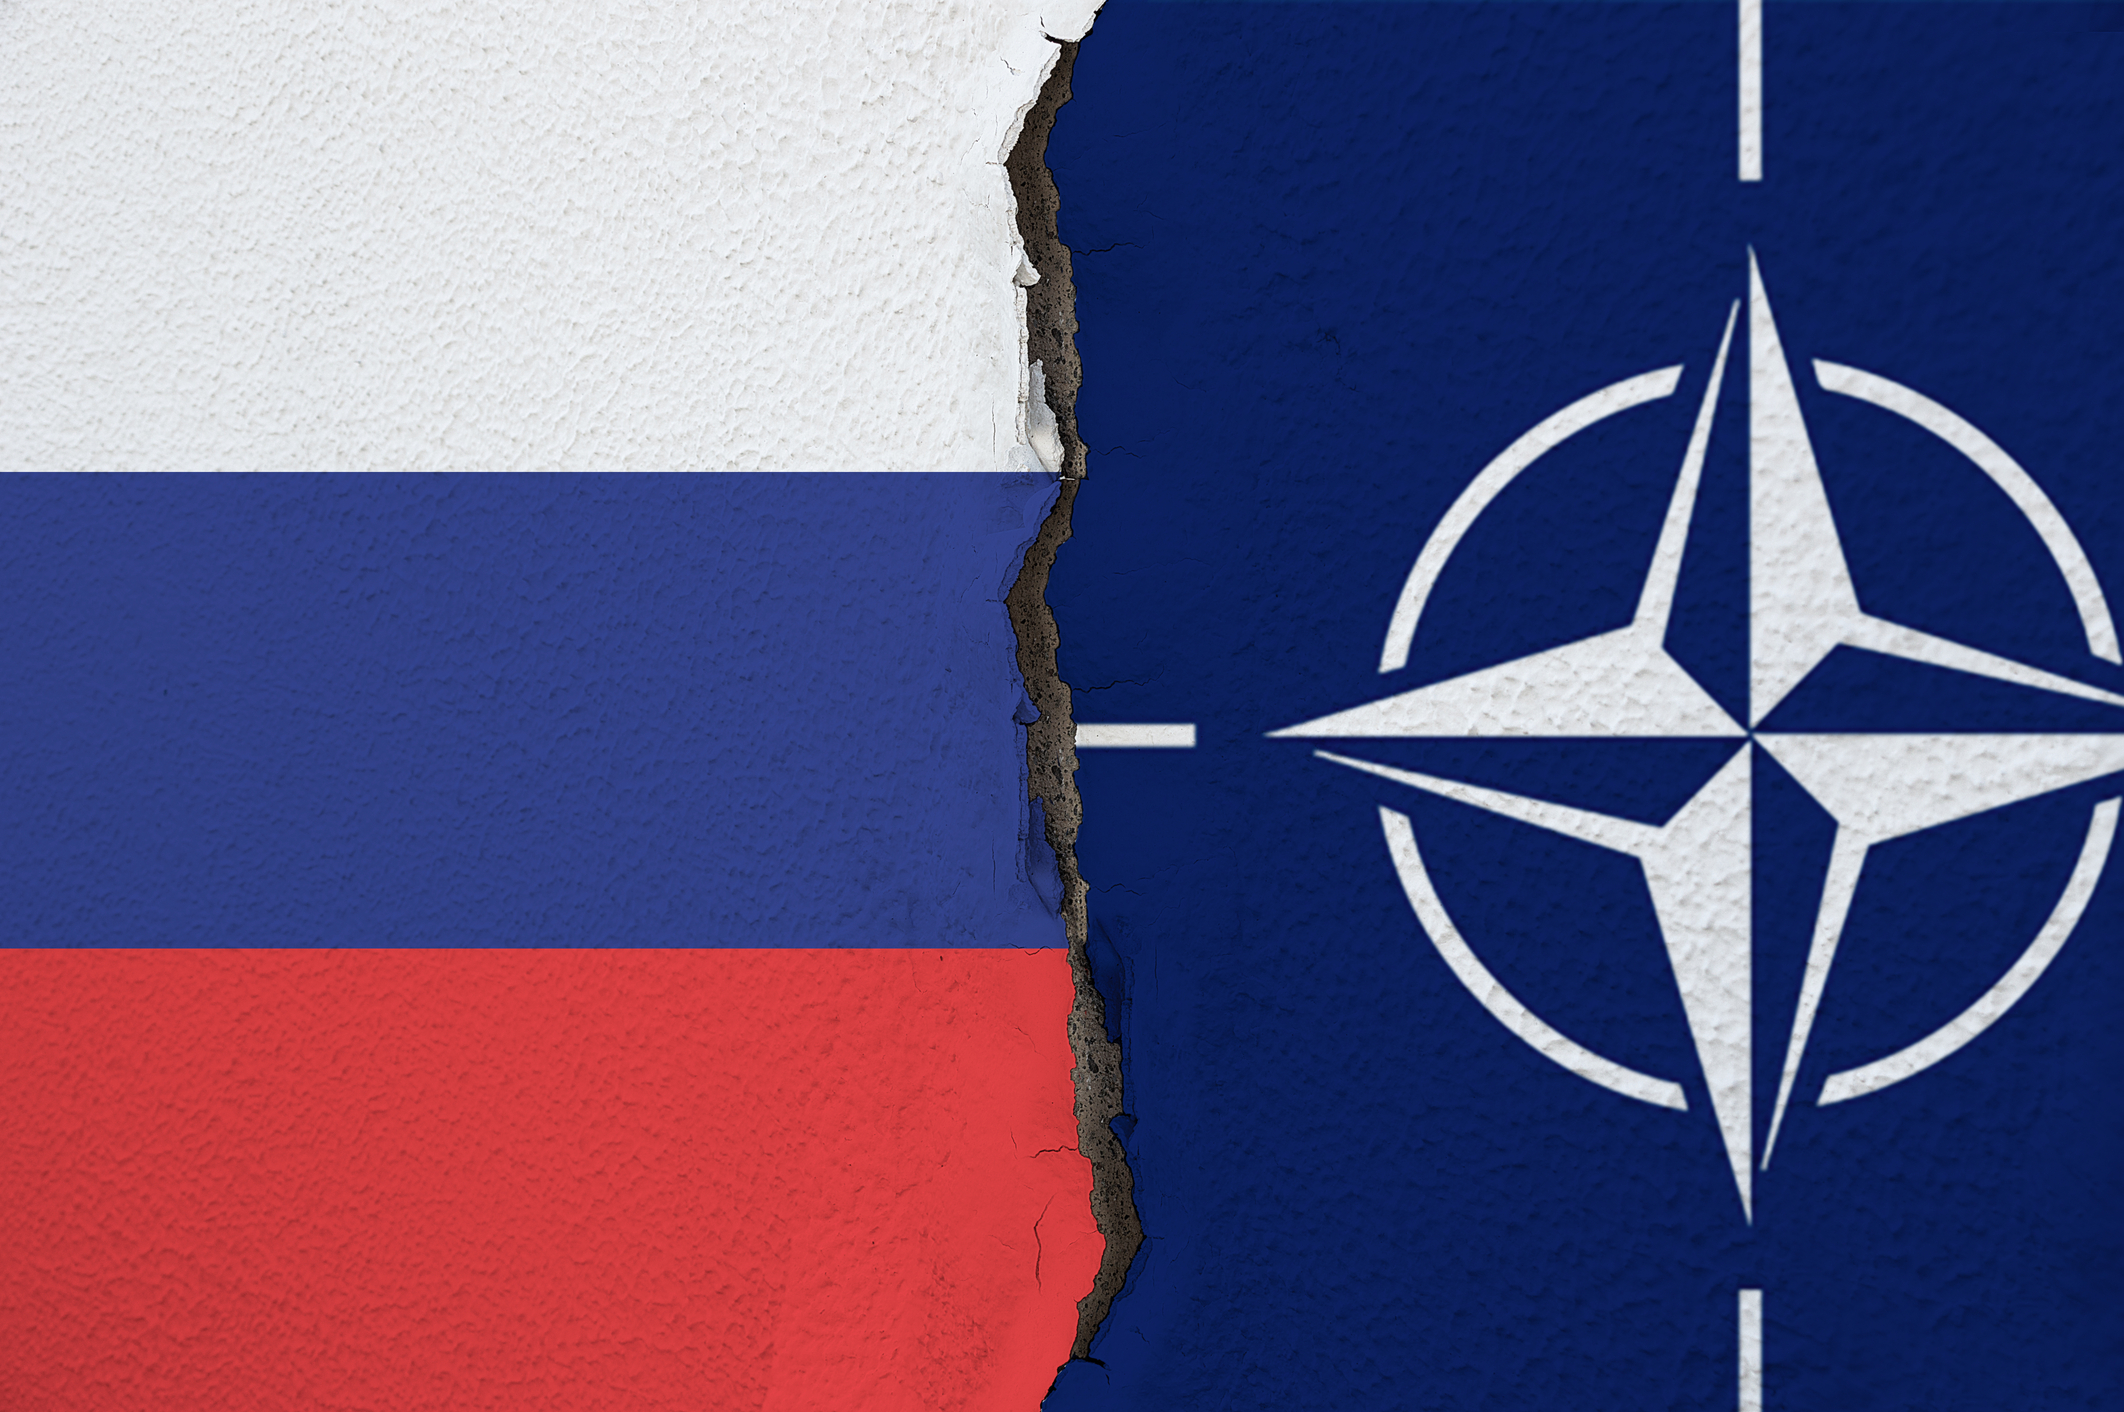 NATO vs Rusia